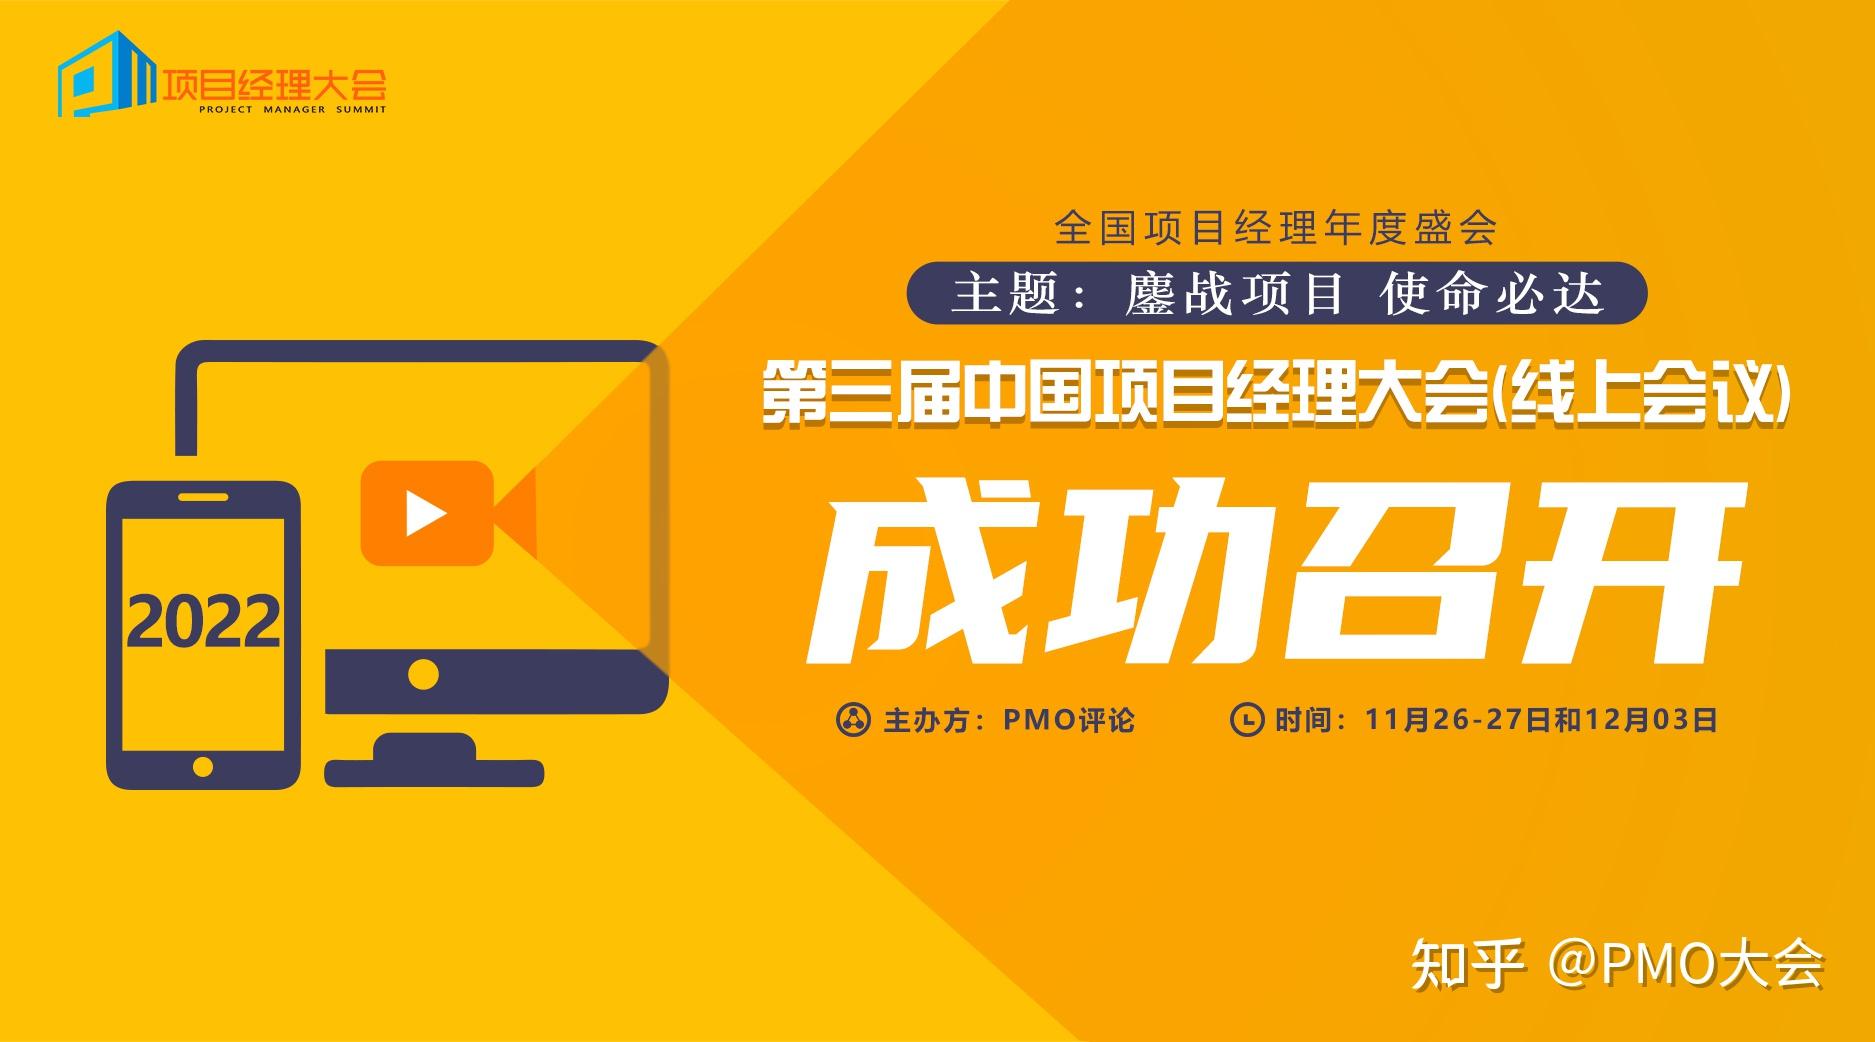 【高转认定】聚米科技一站式项目管理服务平台XPM+被认定为上海市高新技术成果转化项目 - 新闻中心 - 上海聚米信息科技有限公司